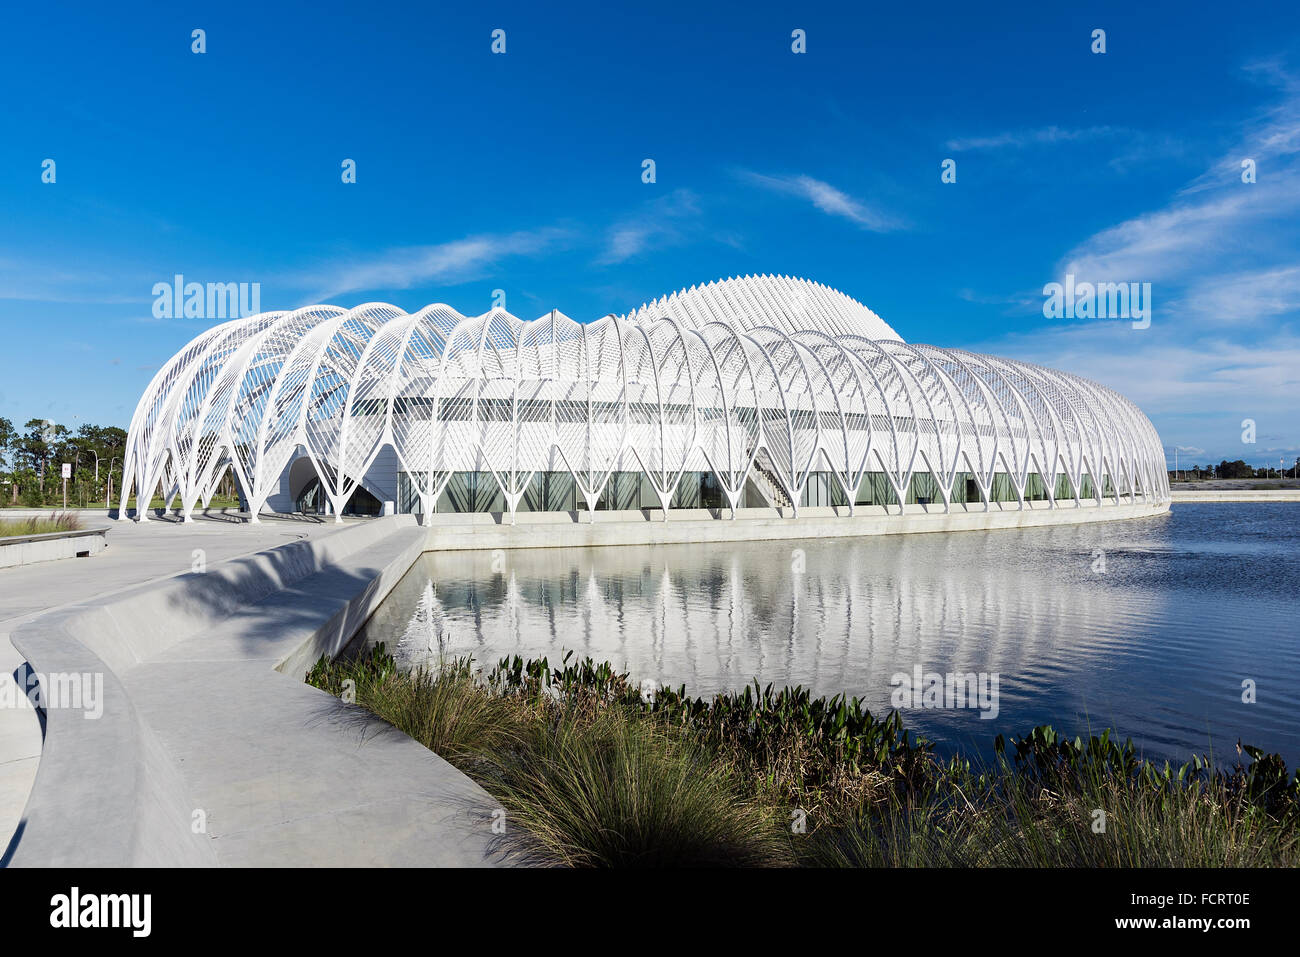 La innovación, la Ciencia y la tecnología en la construcción de la Universidad Politécnica de Florida, de Lakeland, Florida, EE.UU. Foto de stock